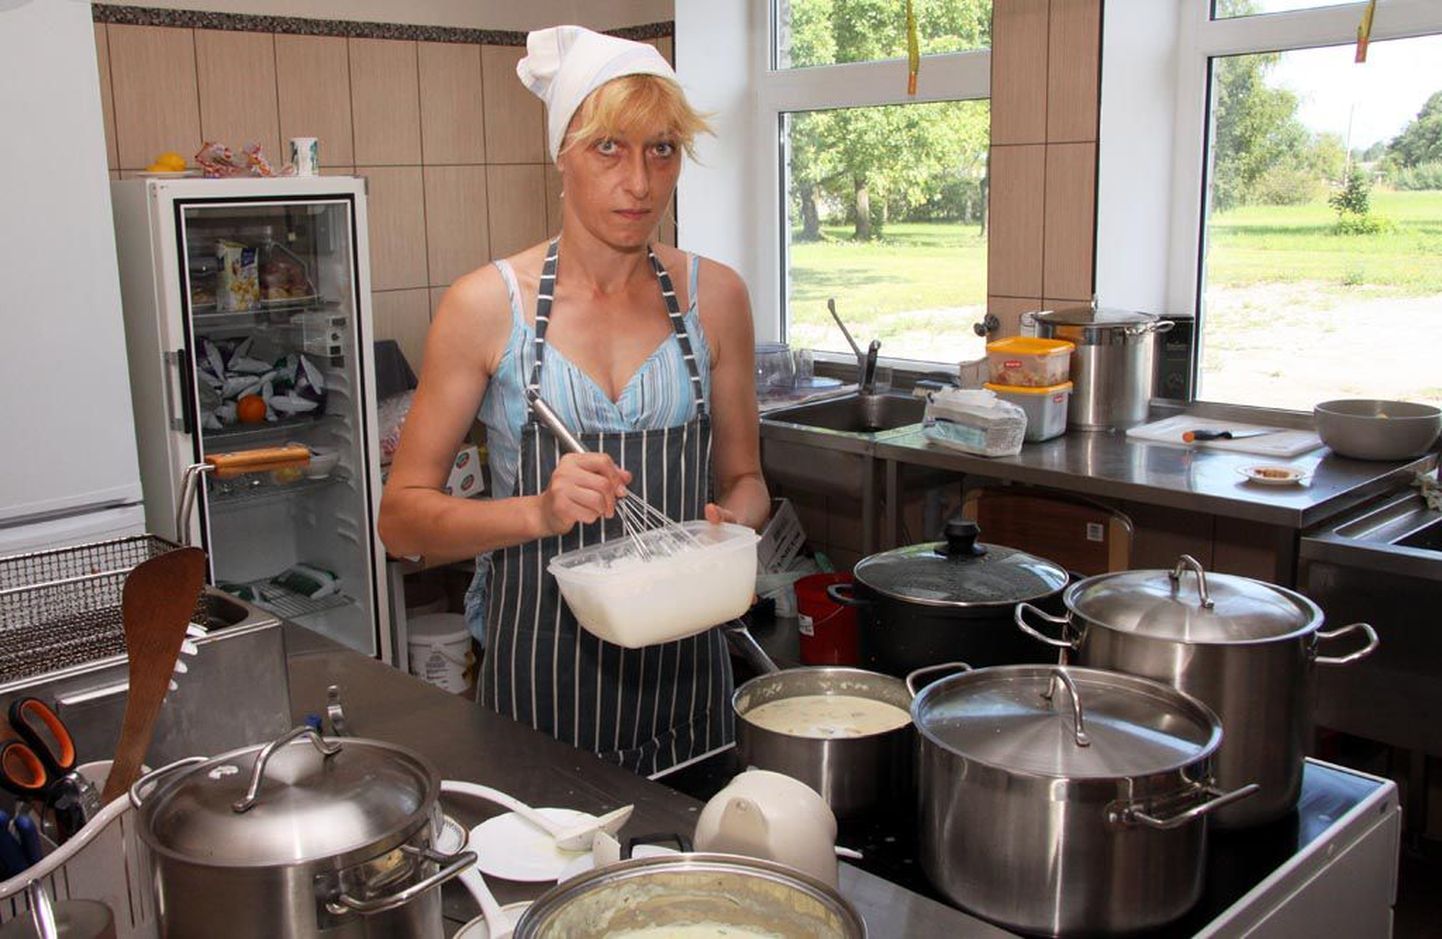 Riigi esimeses ametlikult tunnustatud seltsimaja köögis Suigus valmistab teetöölistele toitu Olga Rikovskaja.